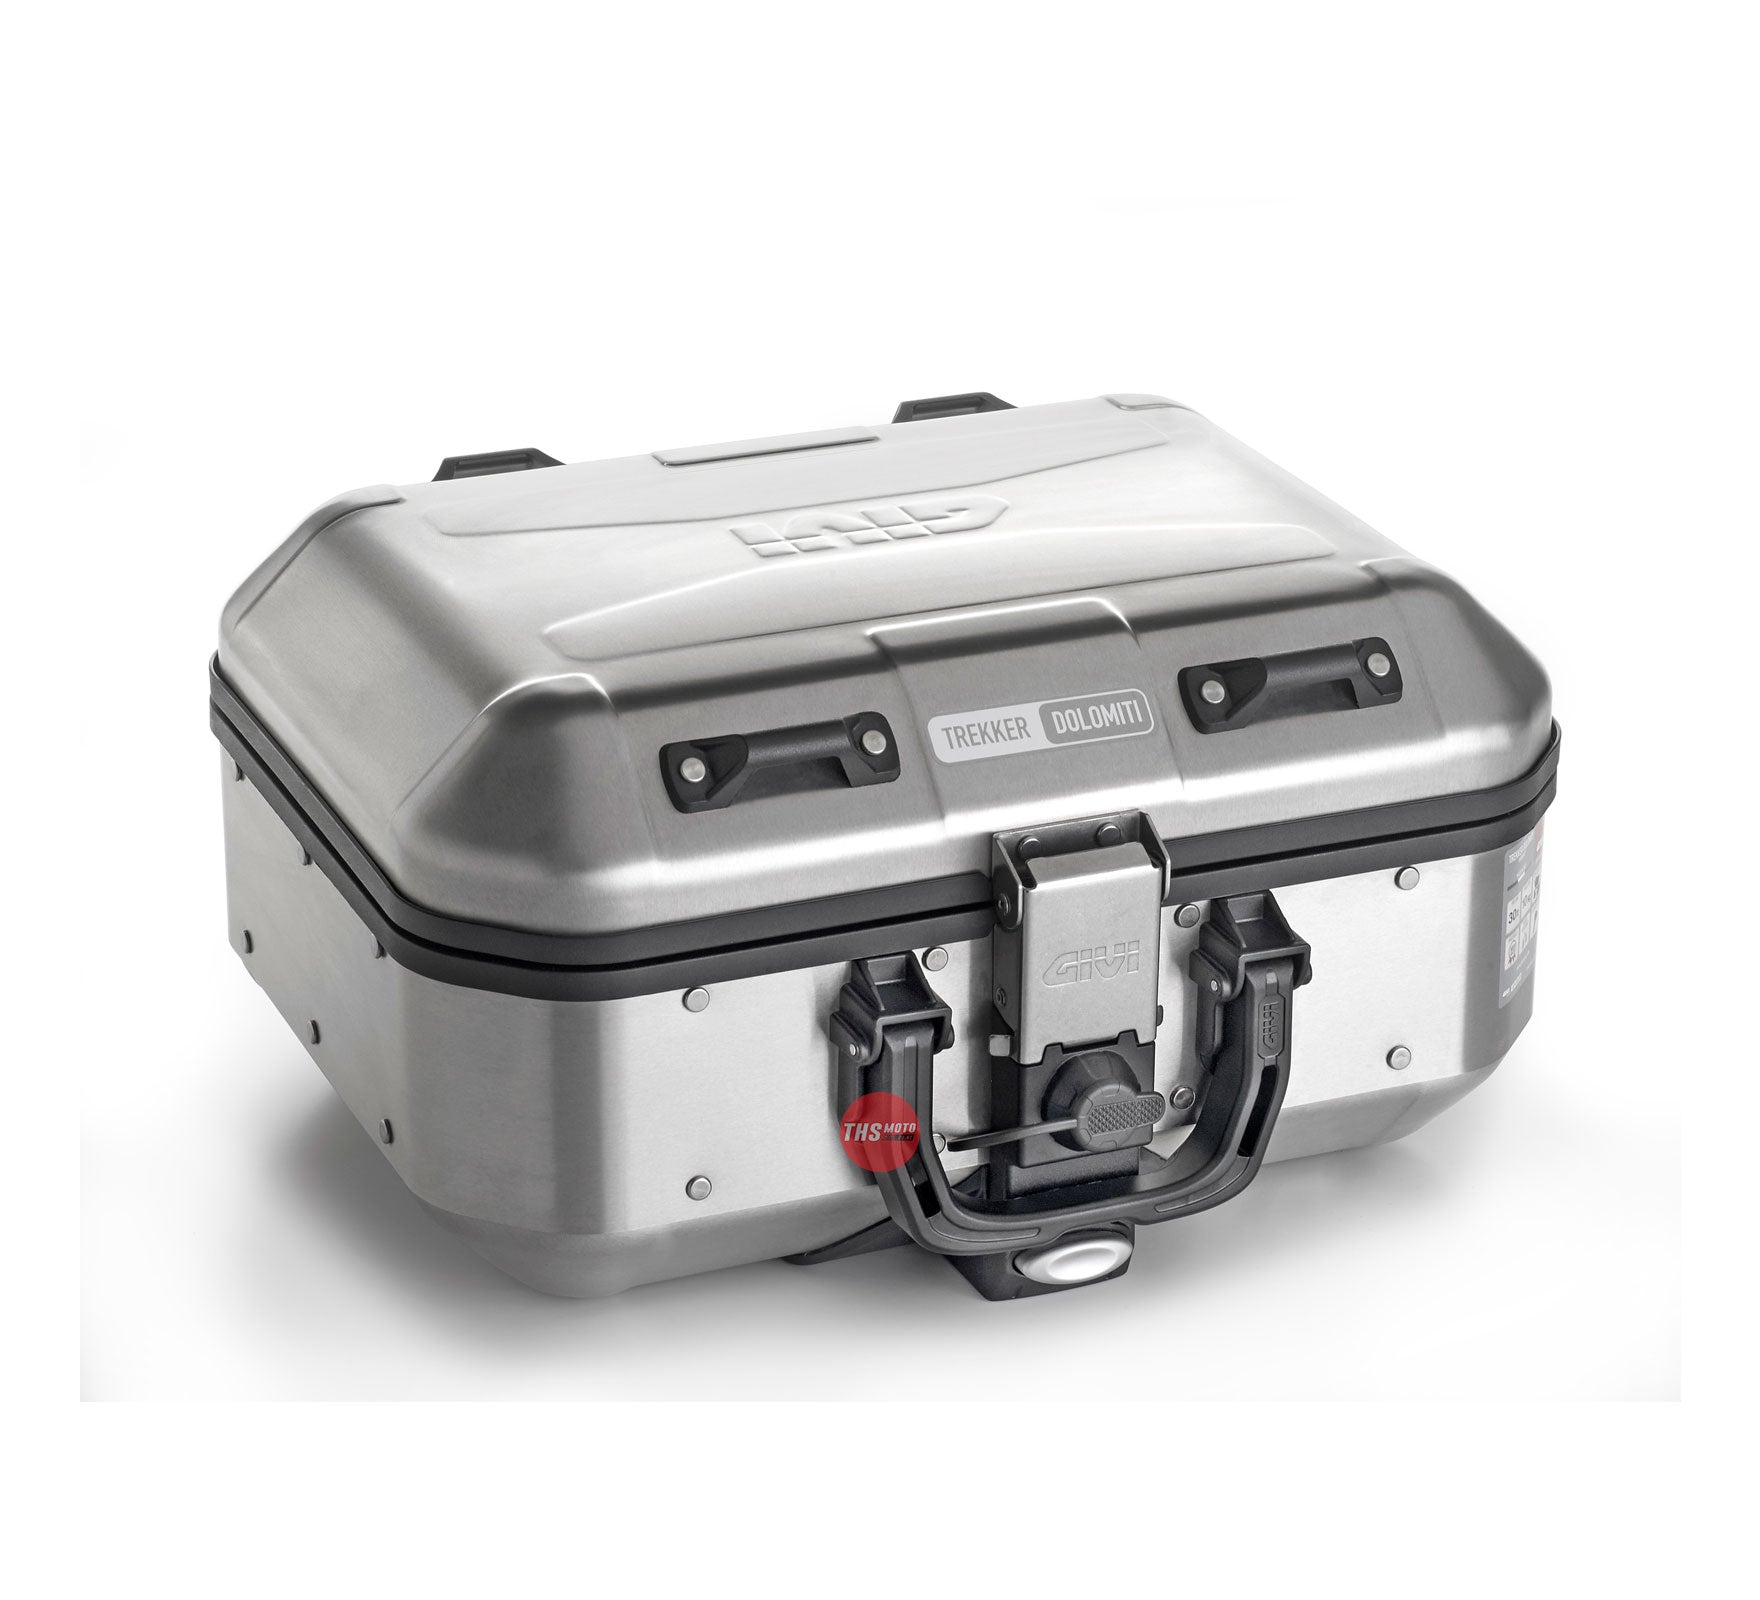 GIVI DLM30 Trekker Dolomiti topcase ou valise aluminium - Top case